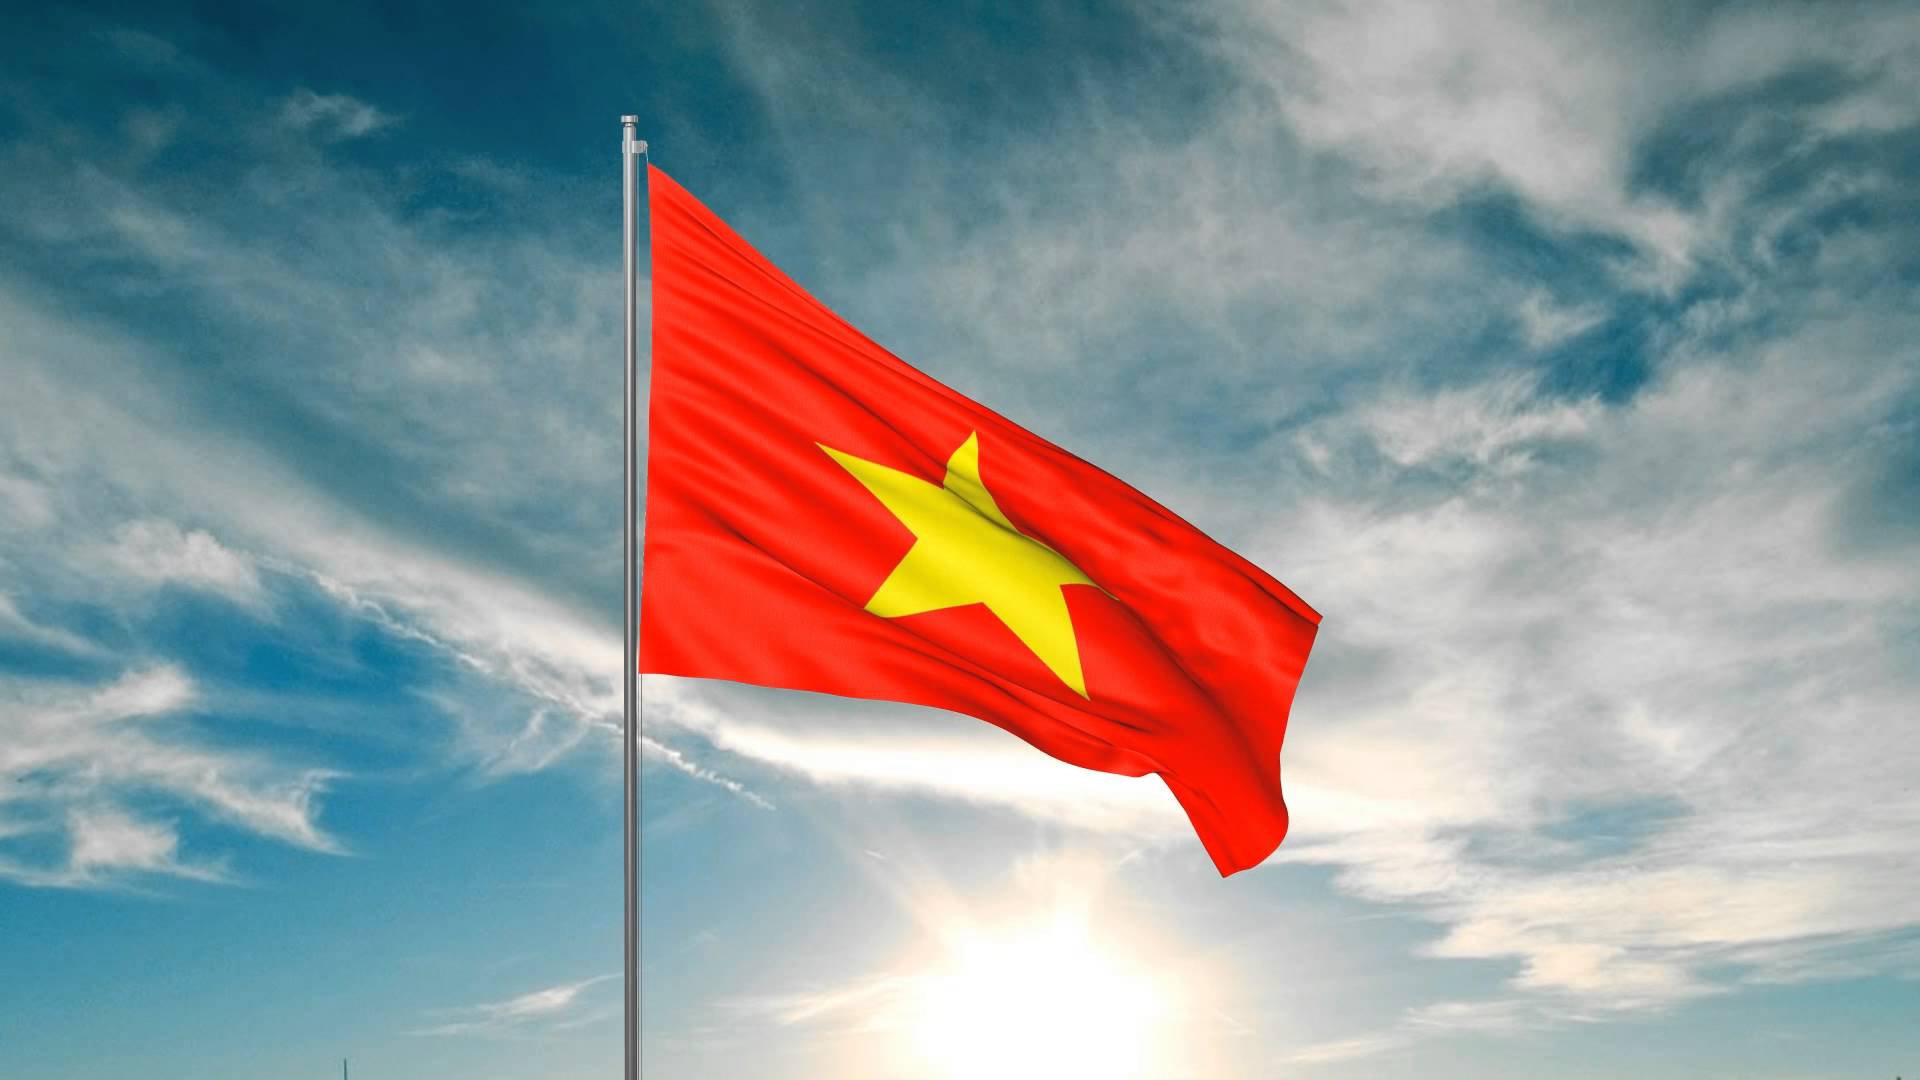 Tên nước Việt Nam hiện tại có cả một câu chuyện lịch sử phía sau (ảnh minh họa)